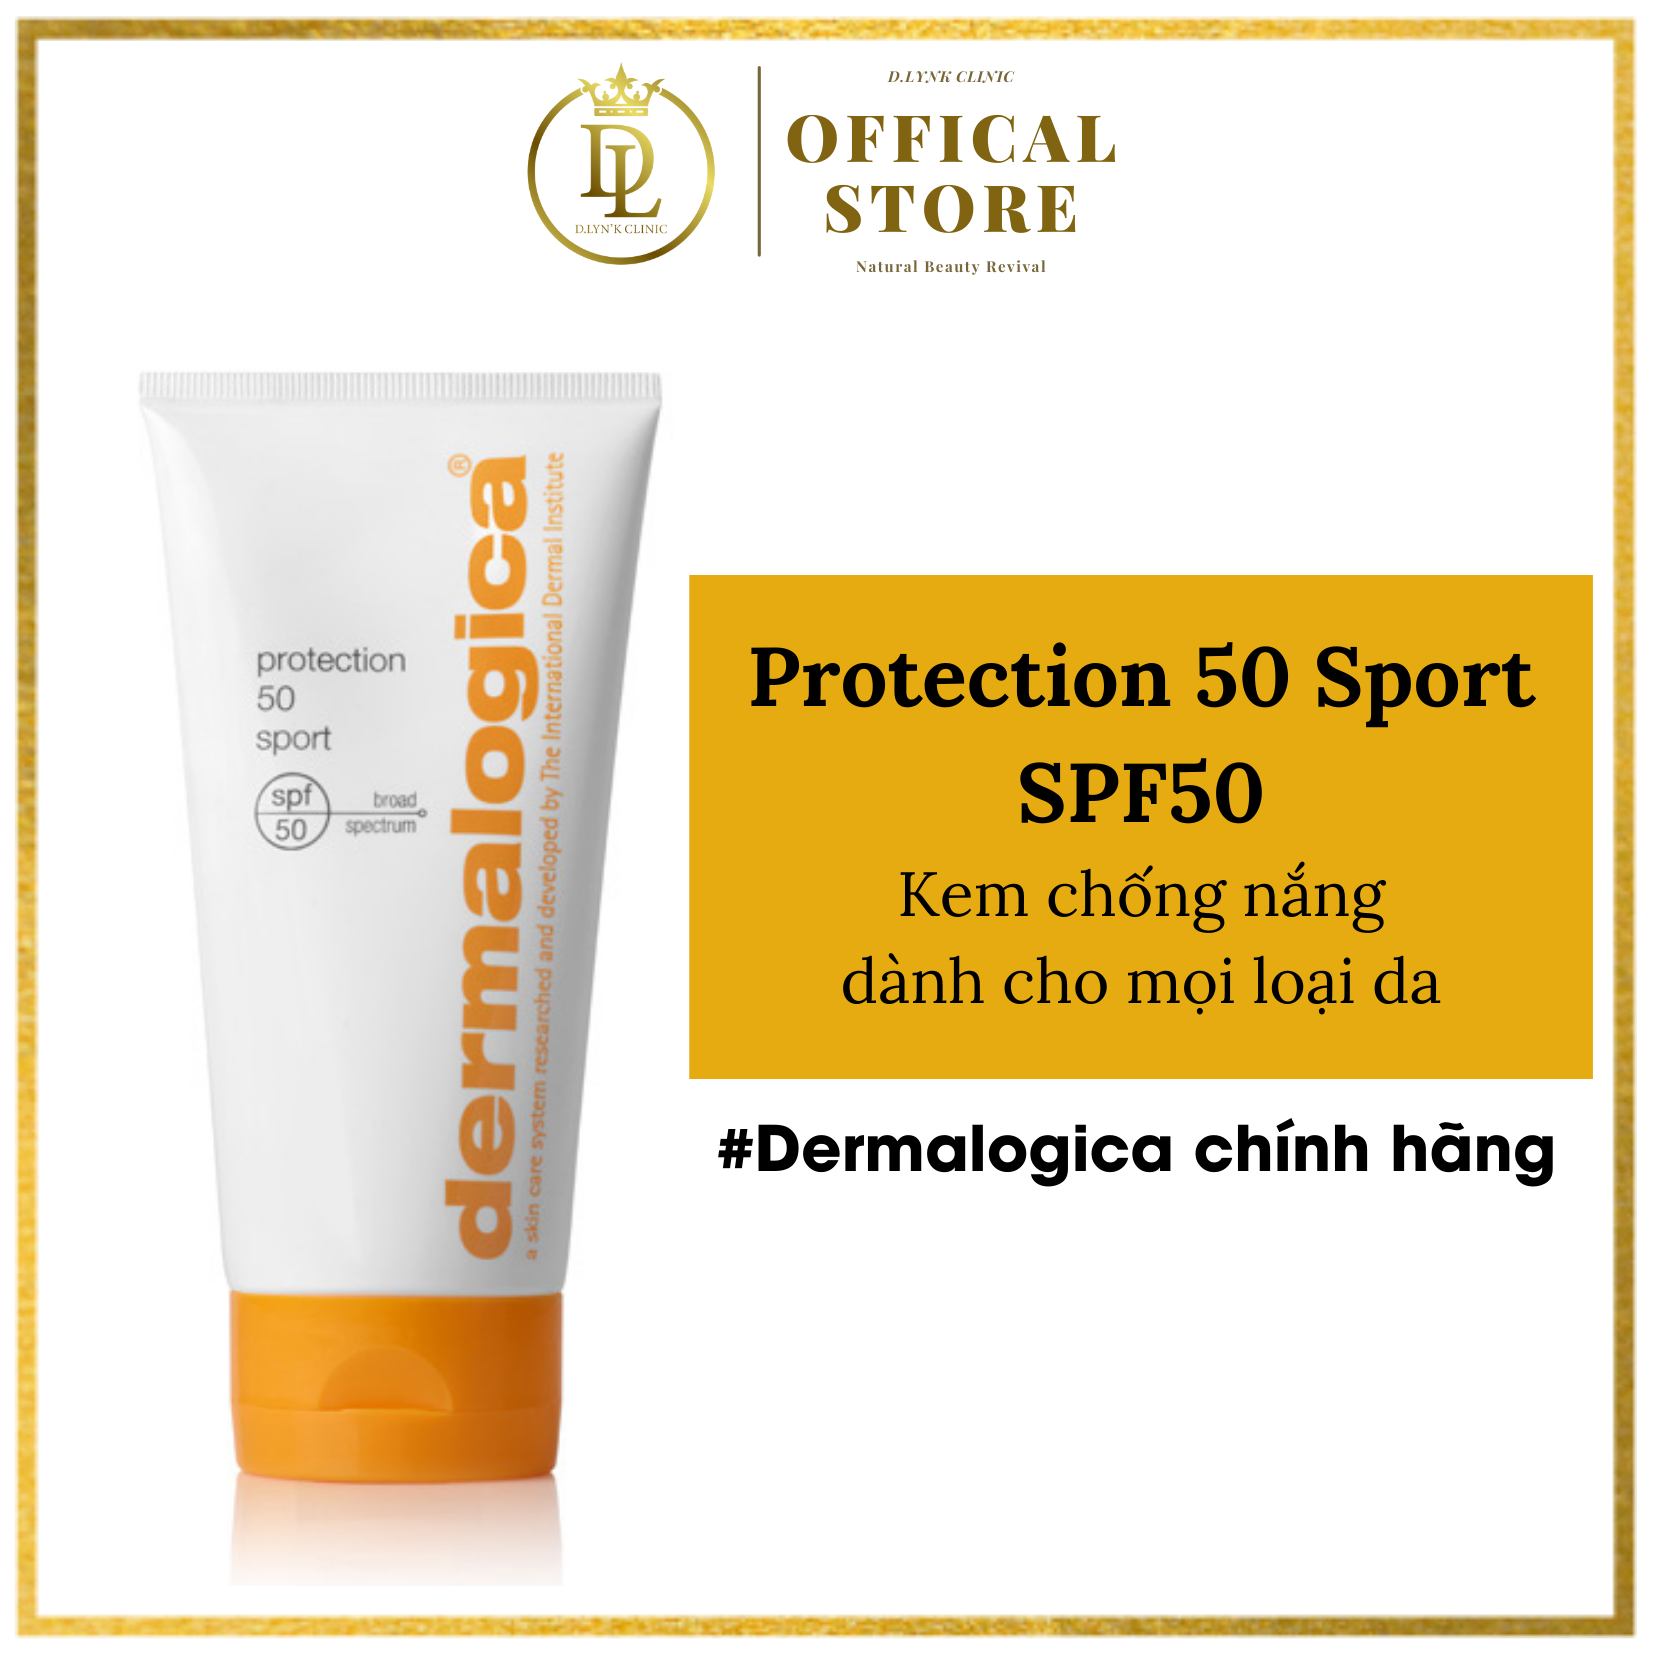 Kem chống nắng quang phổ rộng chống thấm nước, mồ hôi, thích hợp cho cả người chơi thể thao, bơi lội Dermalogica Protection 50 Sport SPF50 156ml